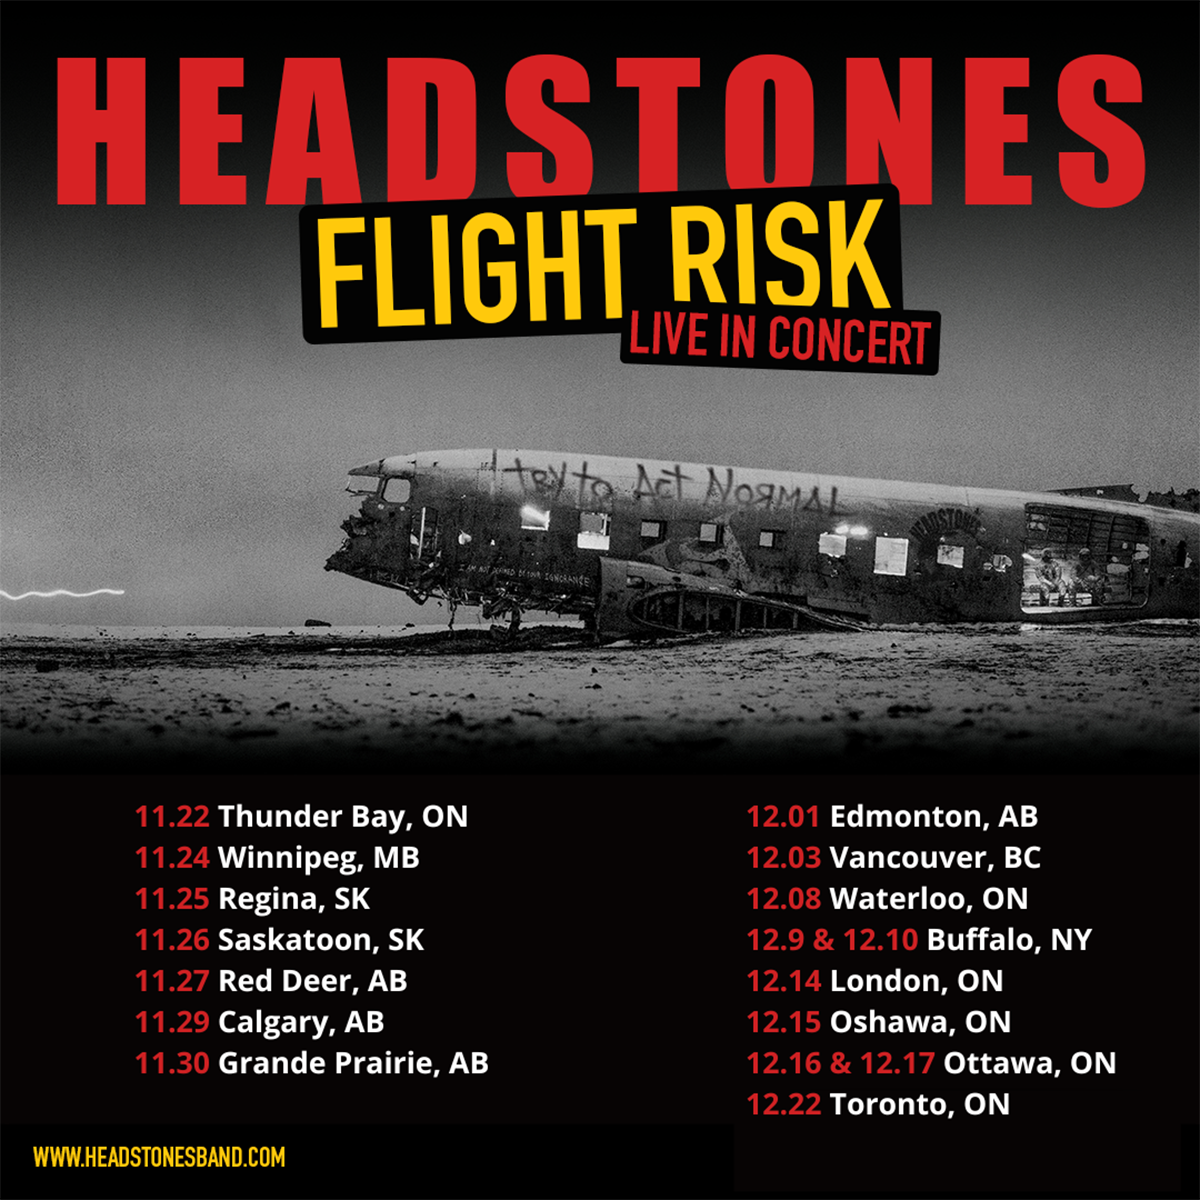 Headstones Flight Risk Concert Dates